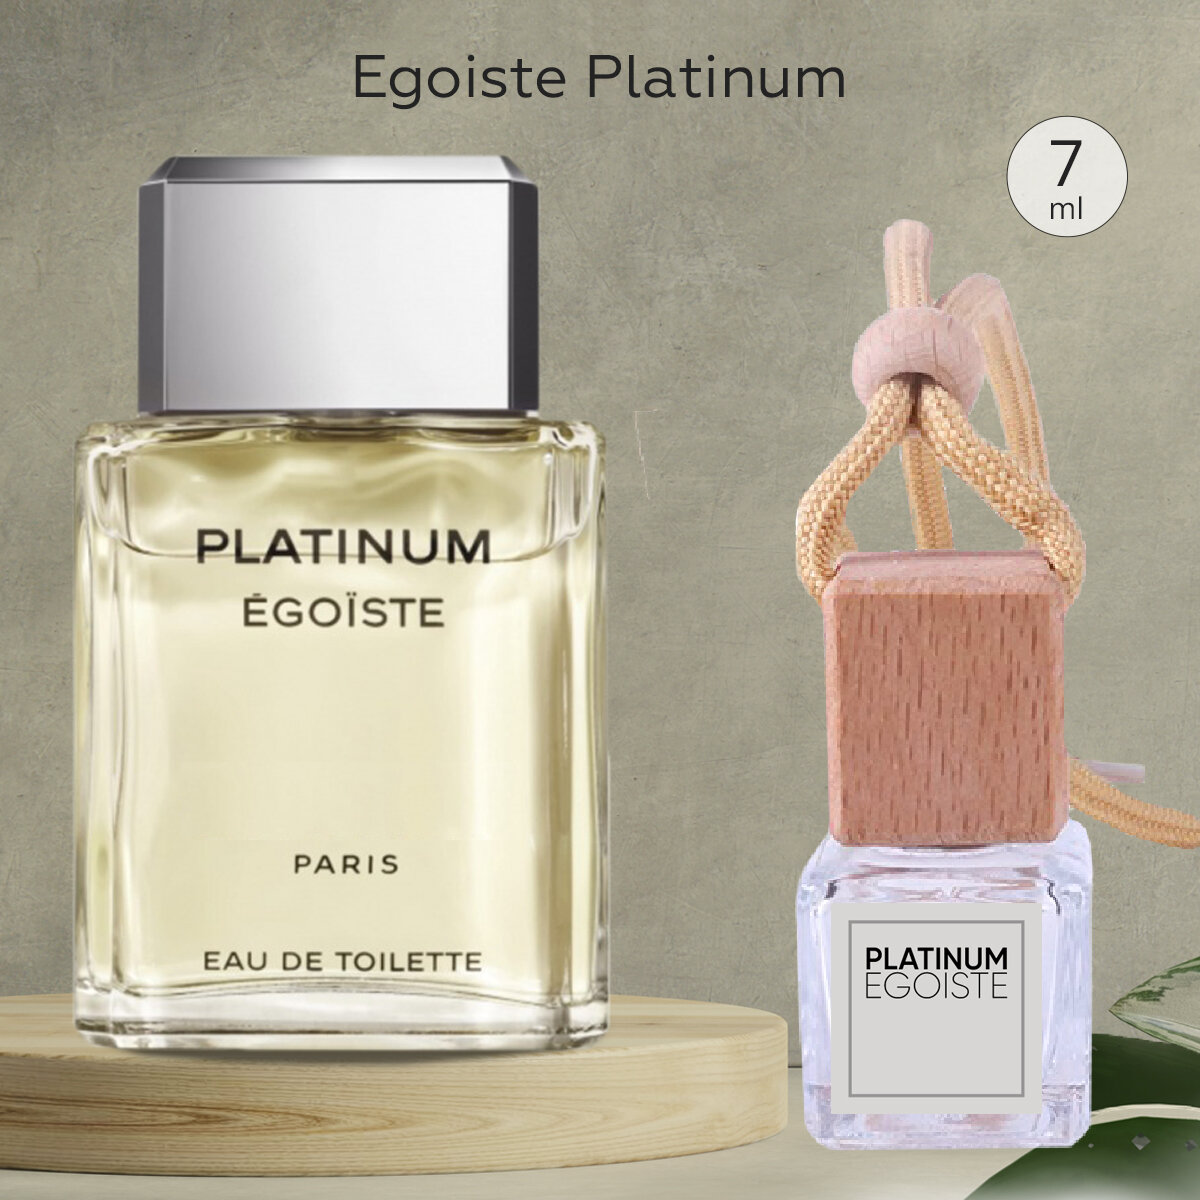 Gratus Parfum Egoiste Platinum Автопарфюм 7 мл / Ароматизатор для автомобиля и дома